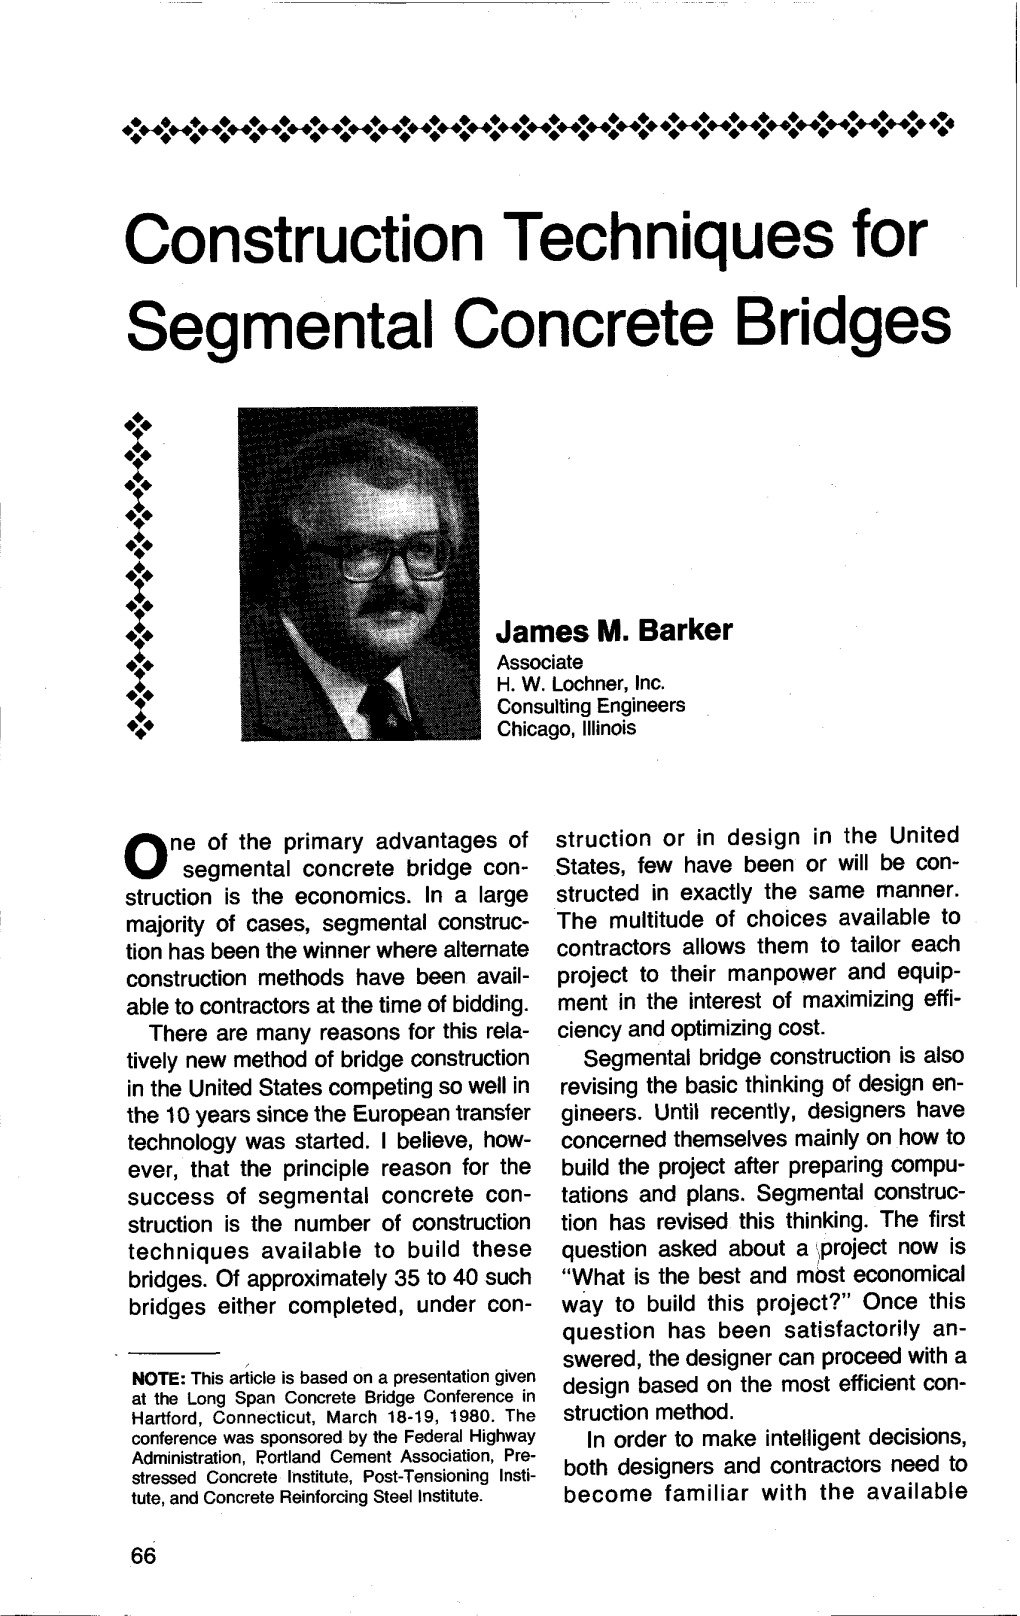 Construction Techniques for Segmental Concrete Bridges